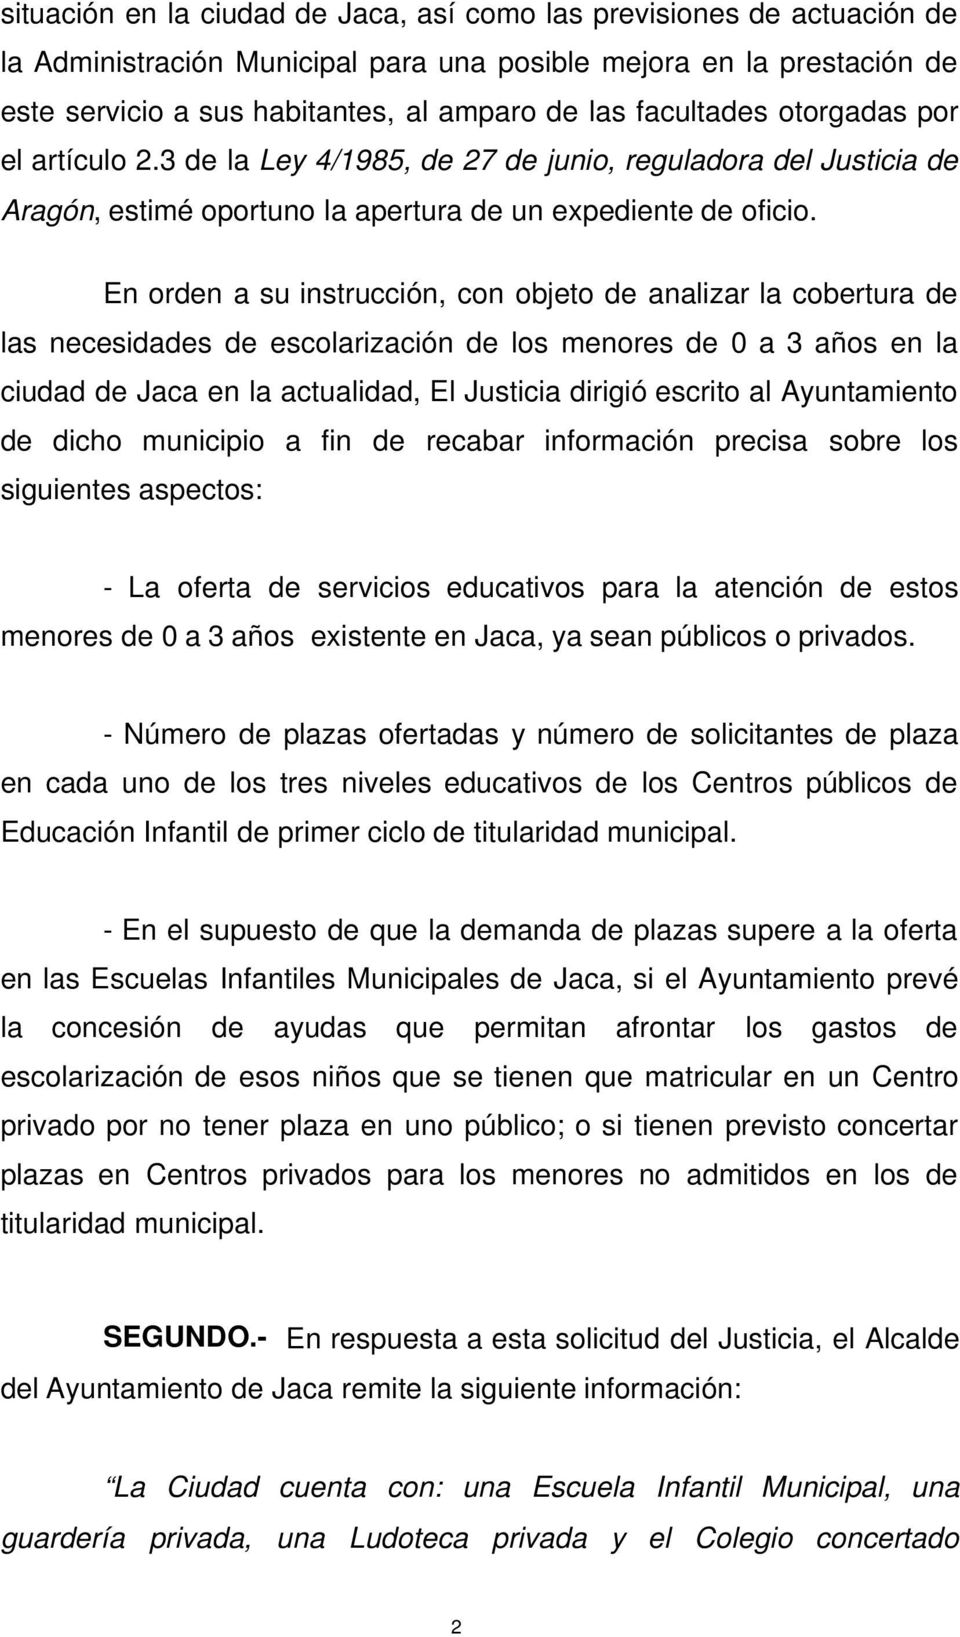 En orden a su instrucción, con objeto de analizar la cobertura de las necesidades de escolarización de los menores de 0 a 3 años en la ciudad de Jaca en la actualidad, El Justicia dirigió escrito al